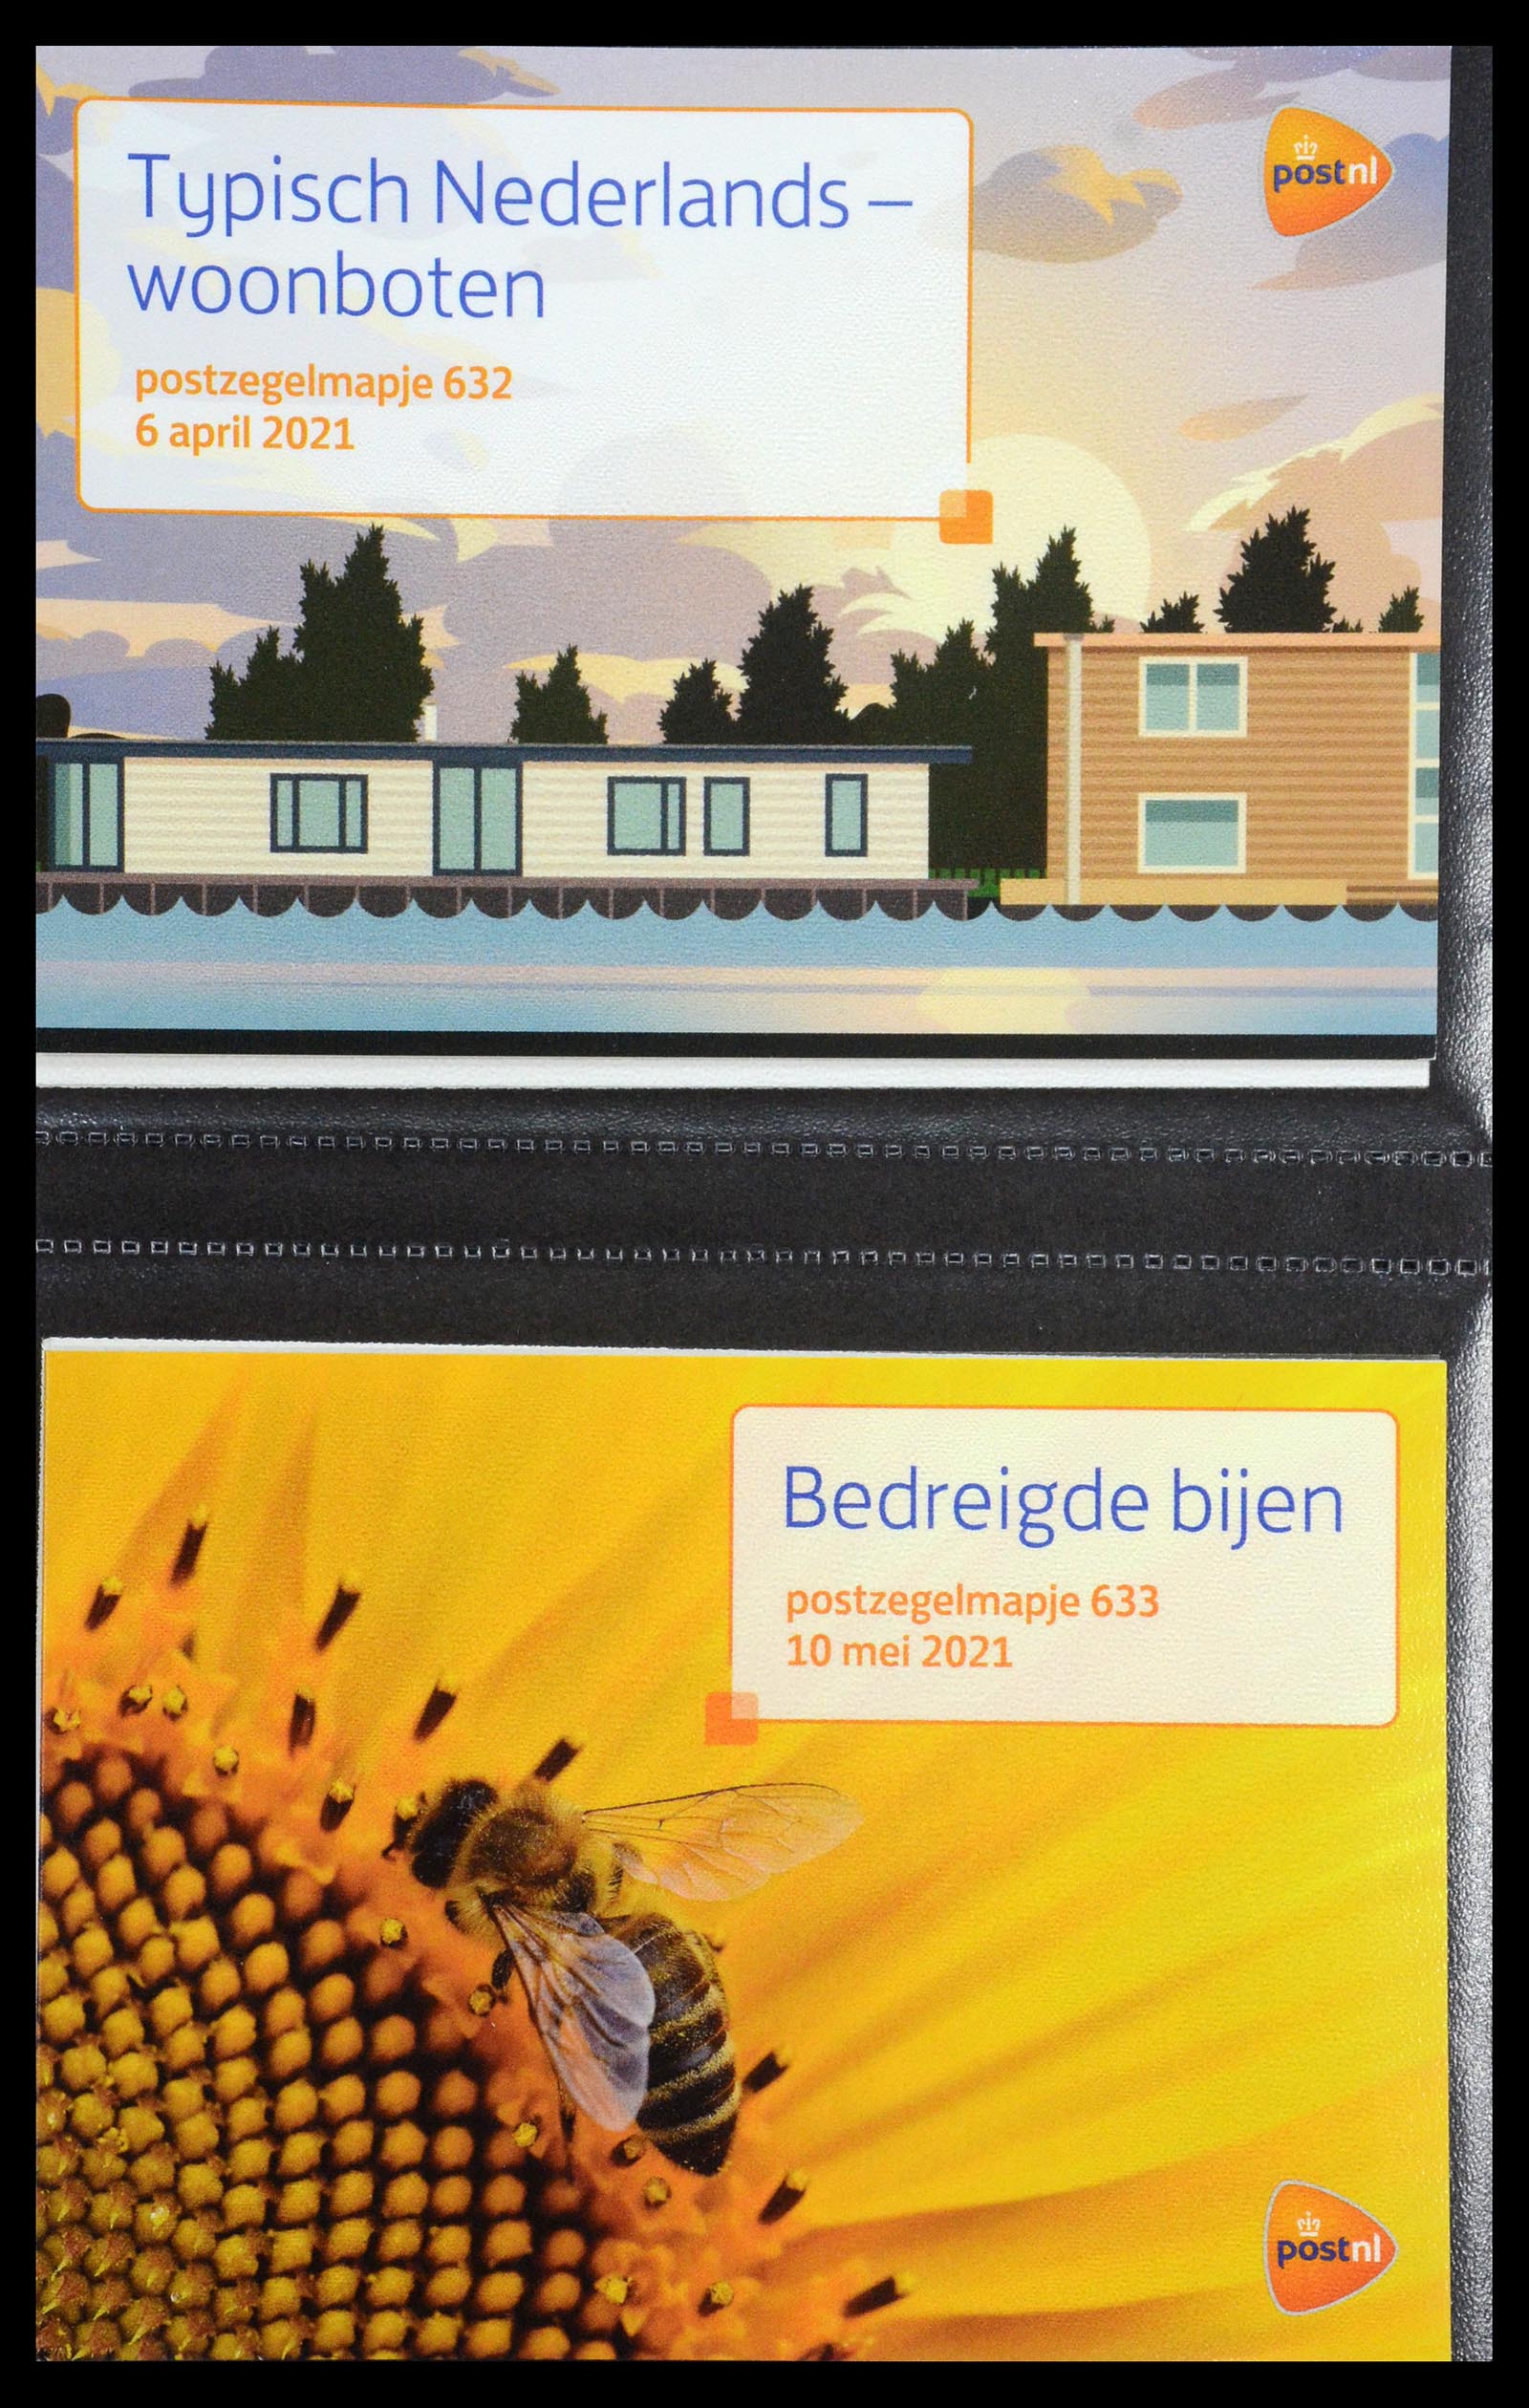 35144 383 - Stamp Collection 35144 Netherlands PTT presentation packs 1982-2021!